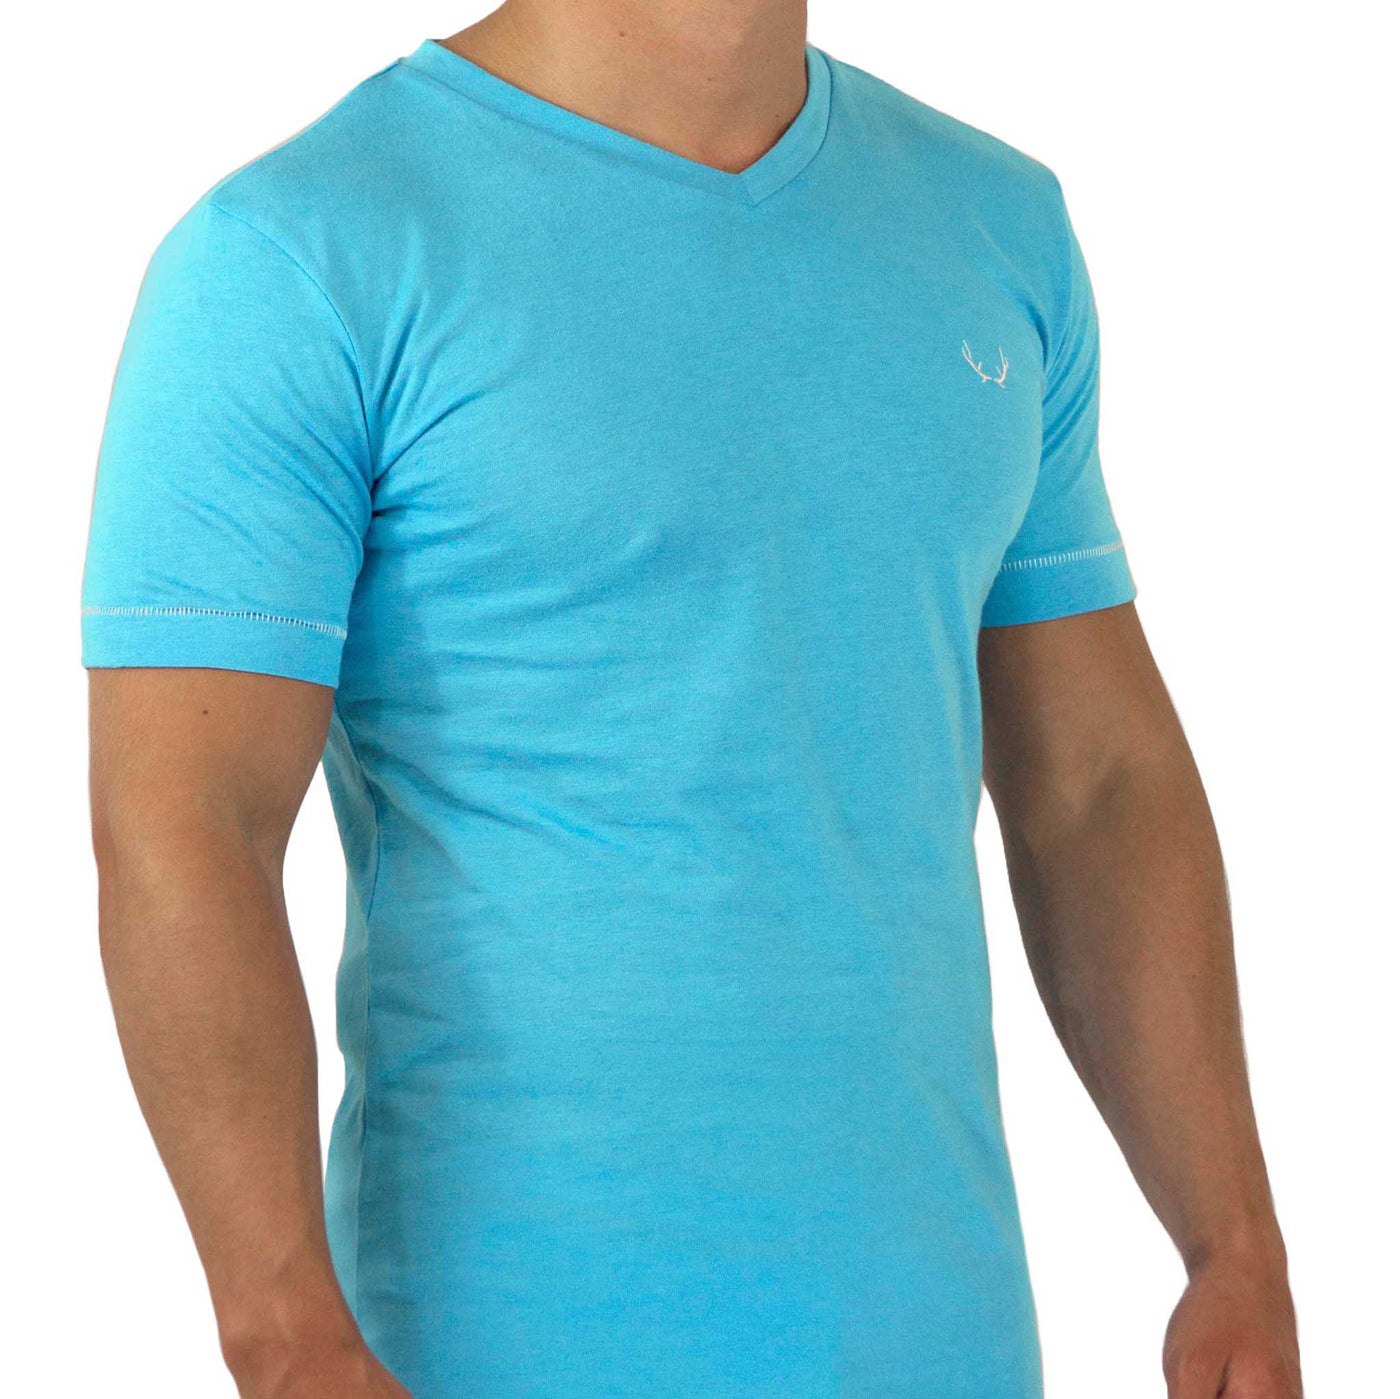 Sky blue V-neck T-shirt